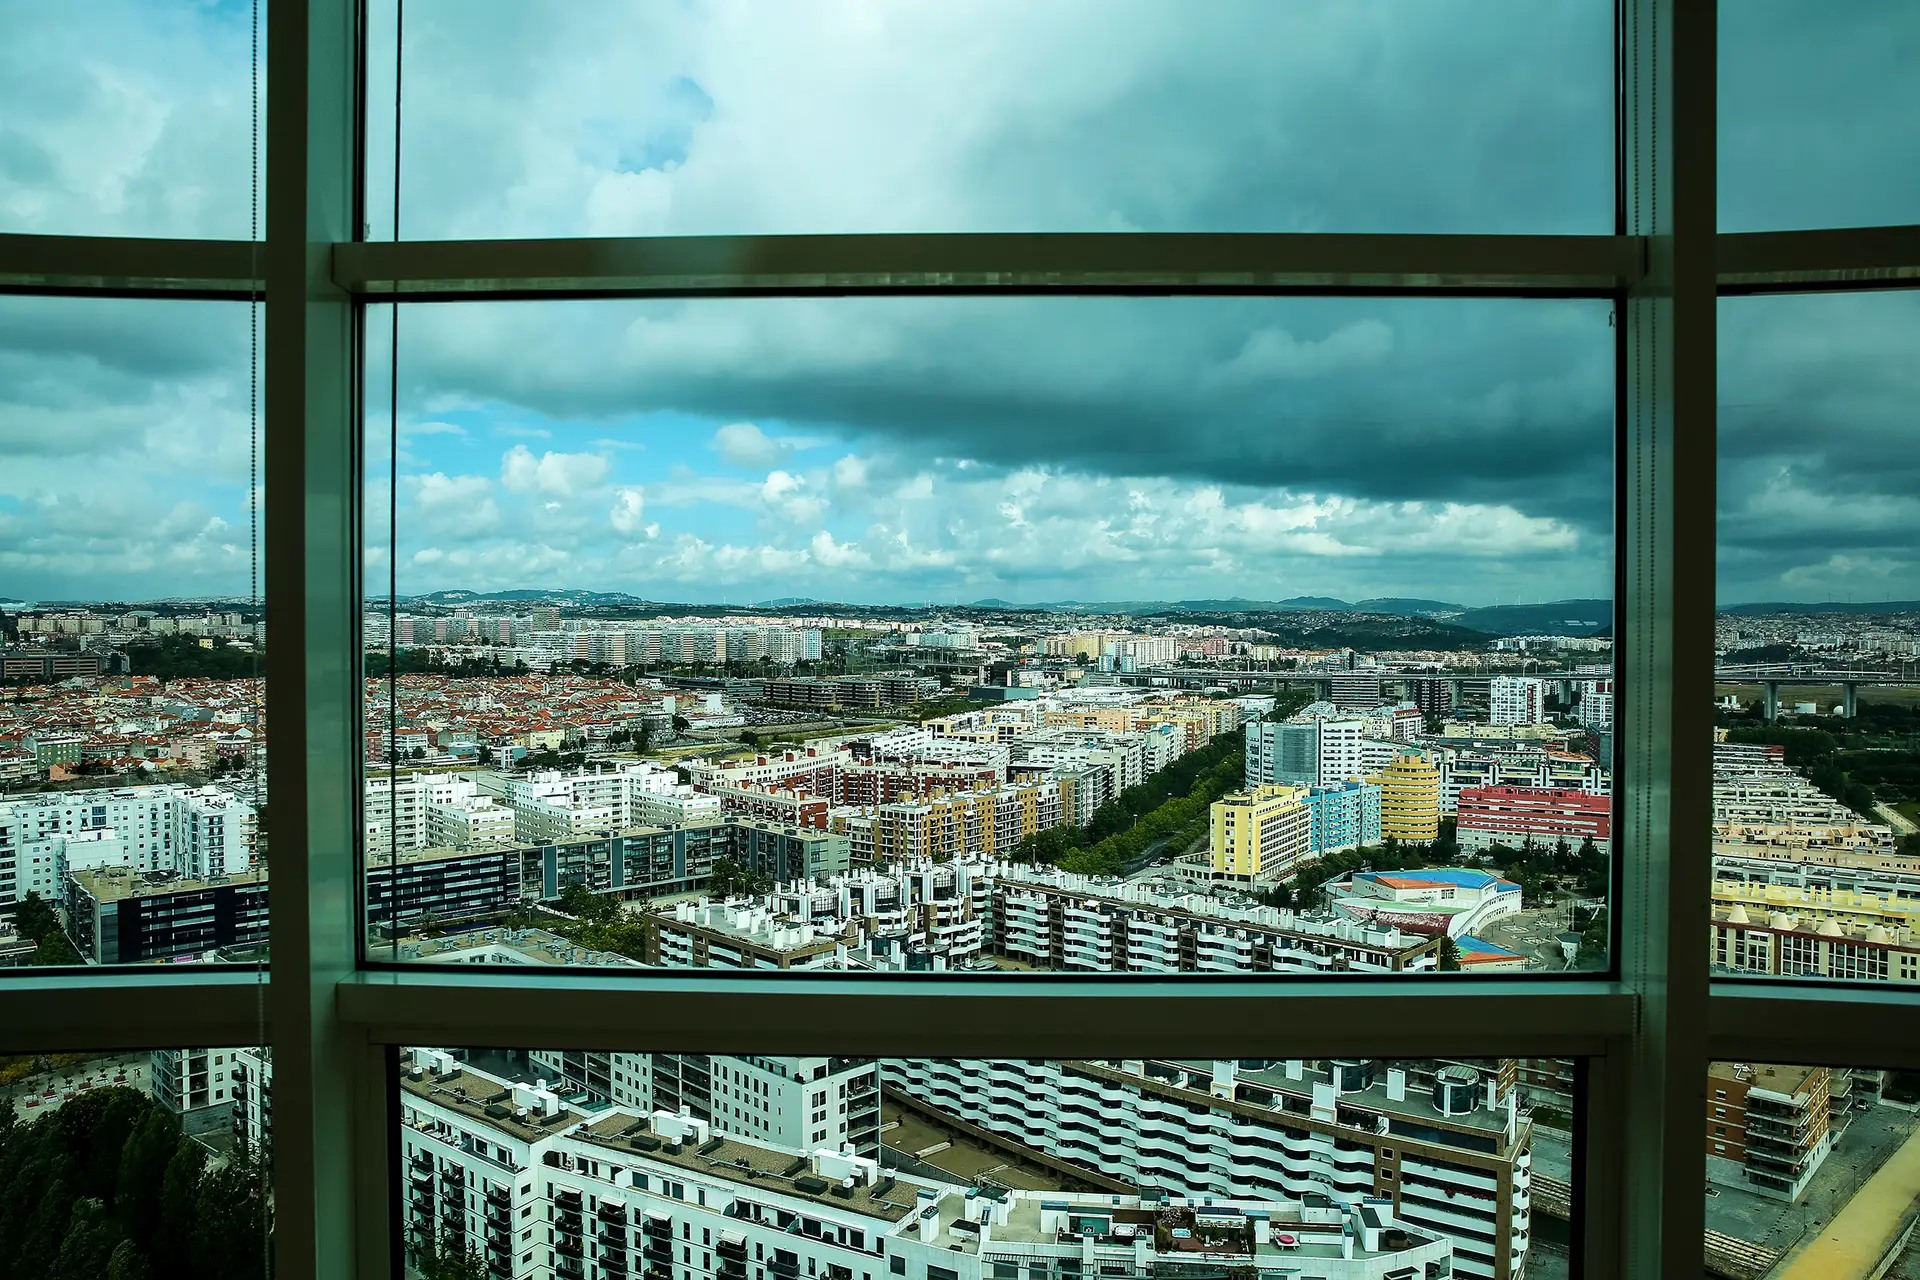 Fundo de pensões do BCP compra edifício em Lisboa